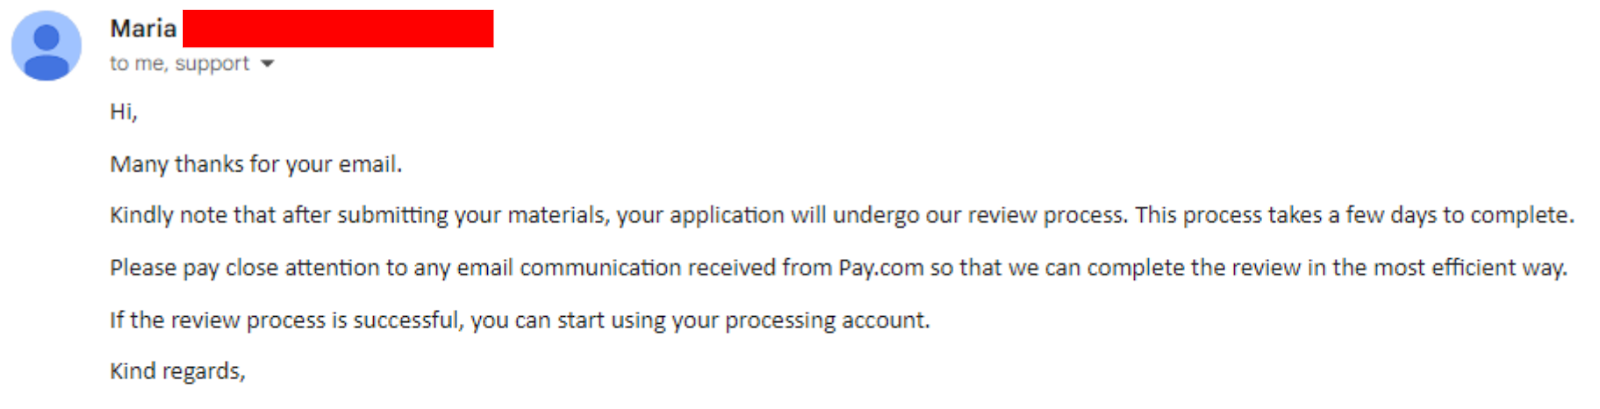 Pay.com Review